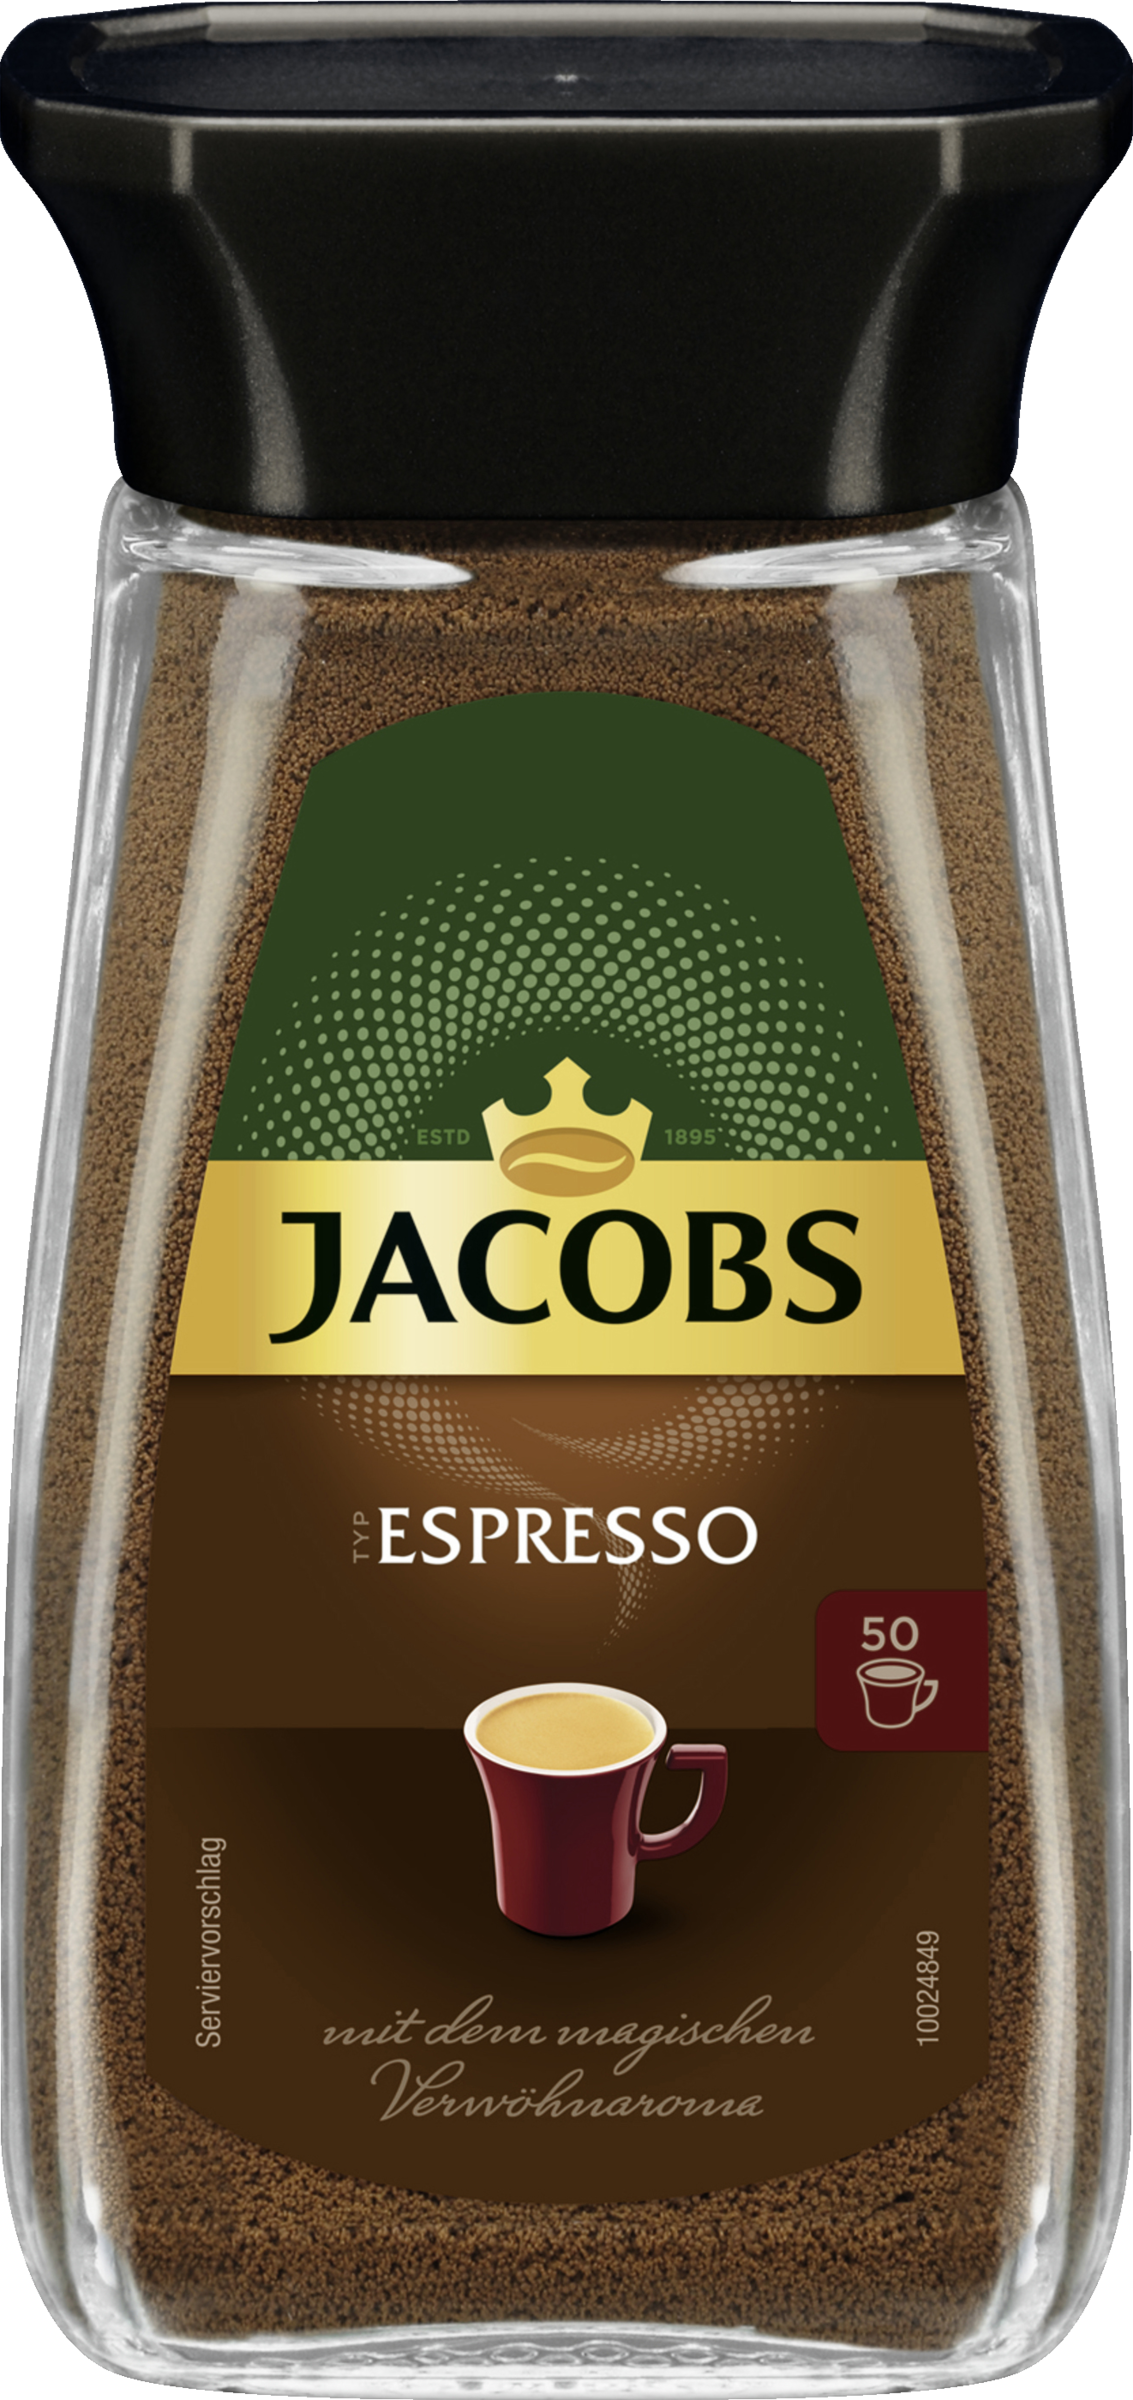 Type espresso instant coffee